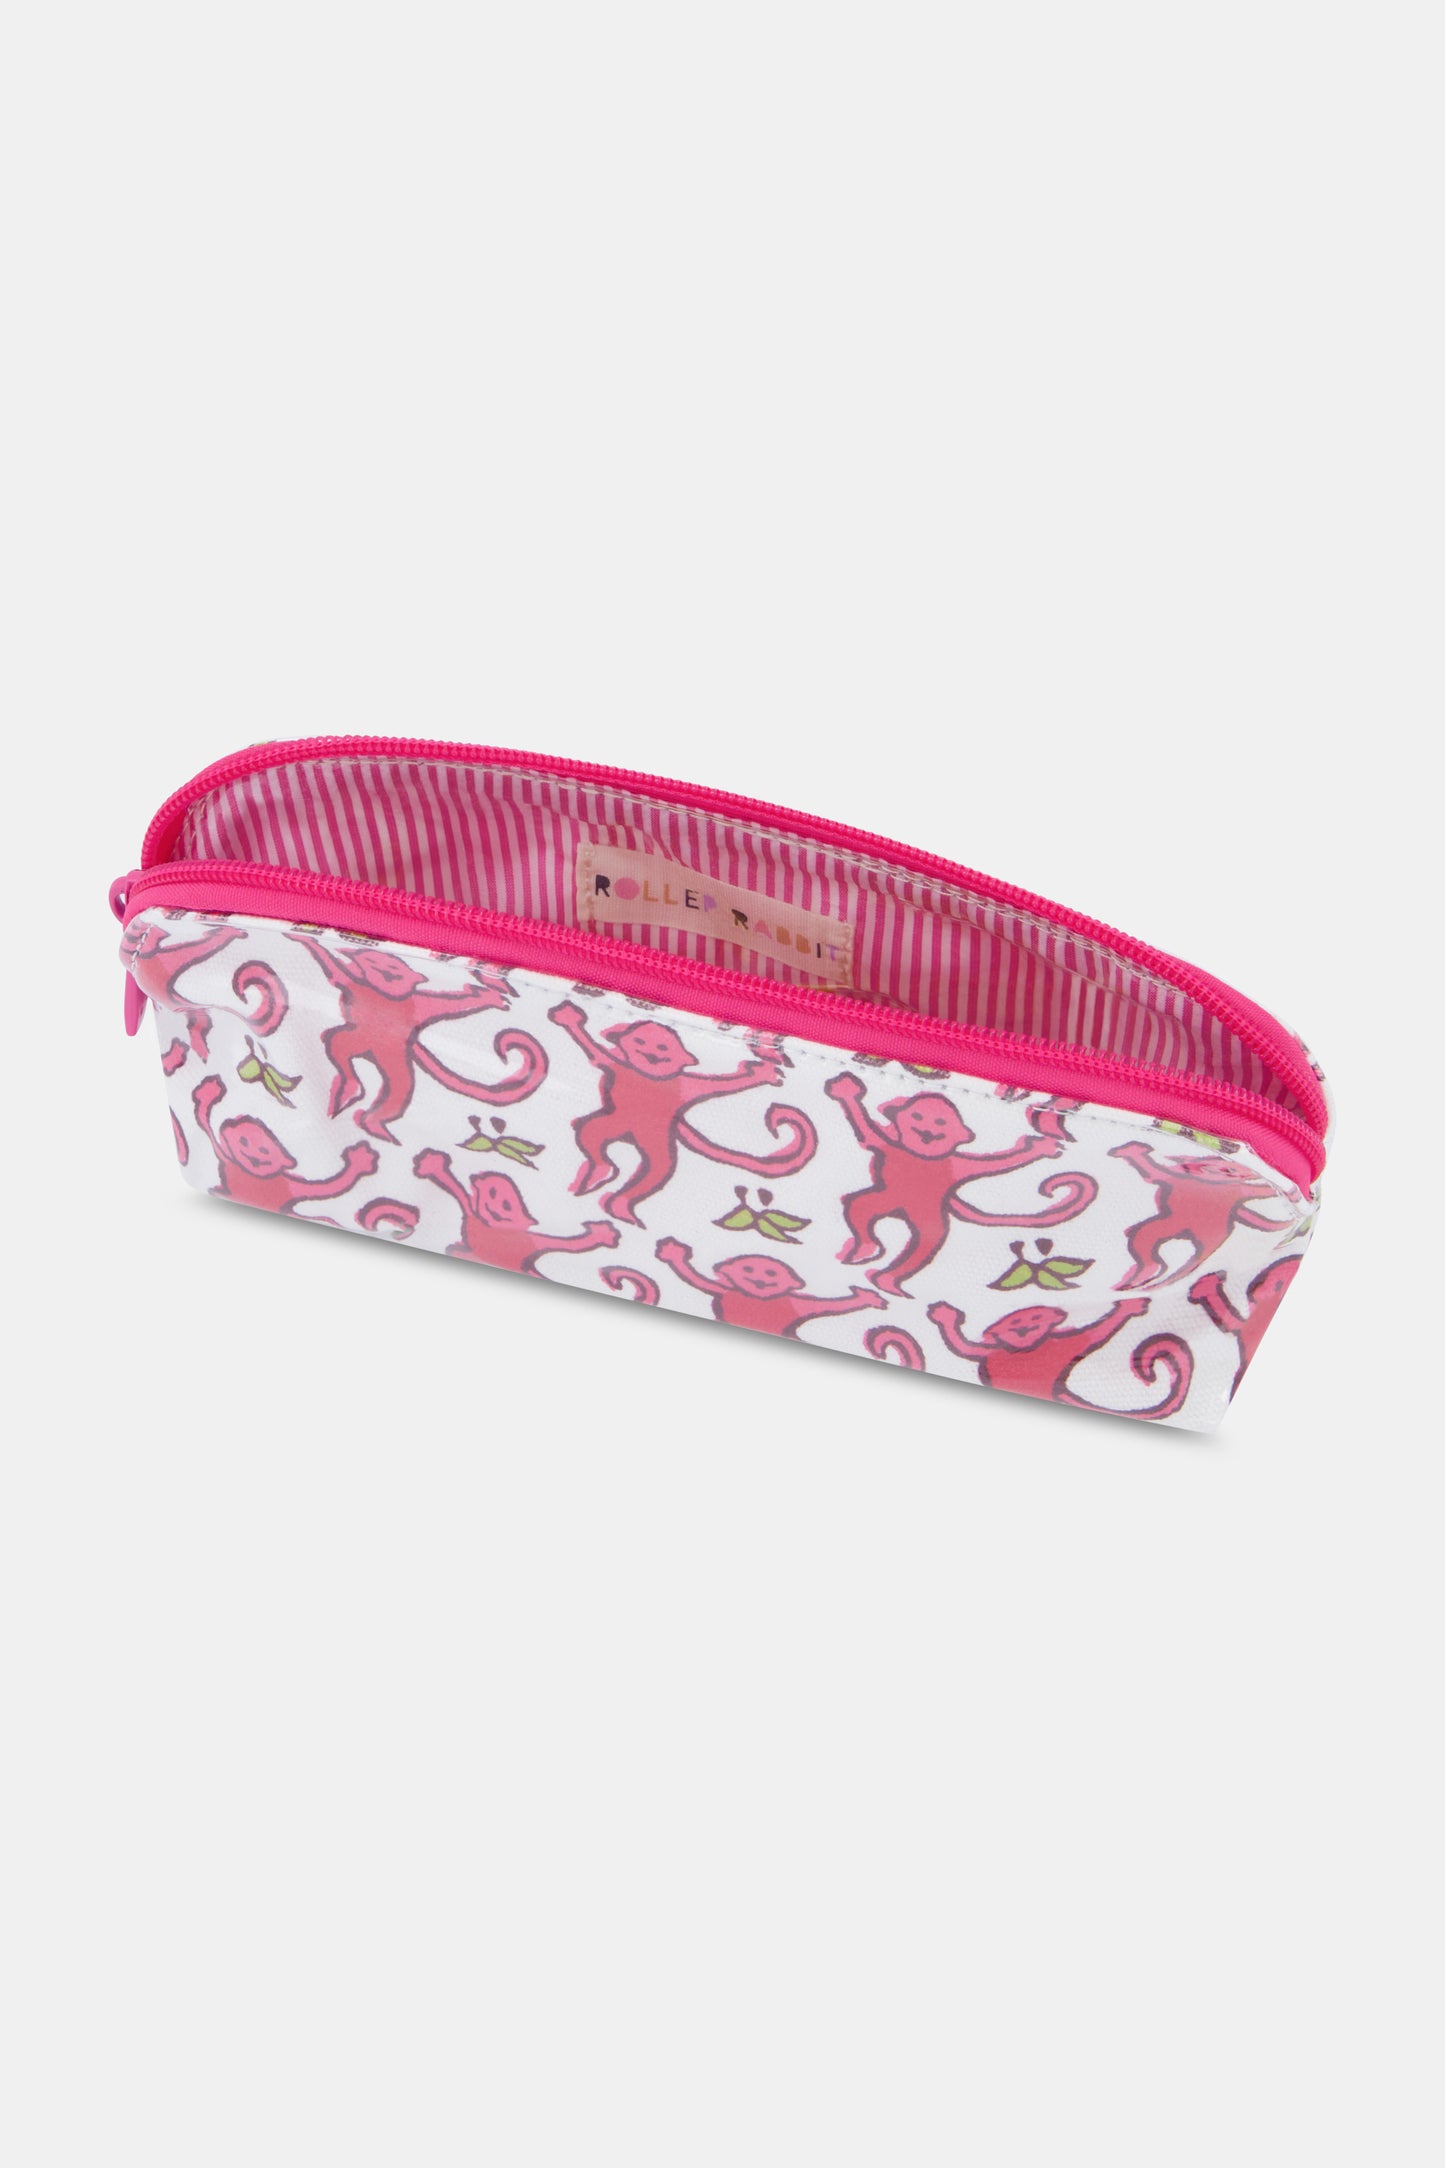 Roller Rabbit Amandine Make Up Bag Pink S